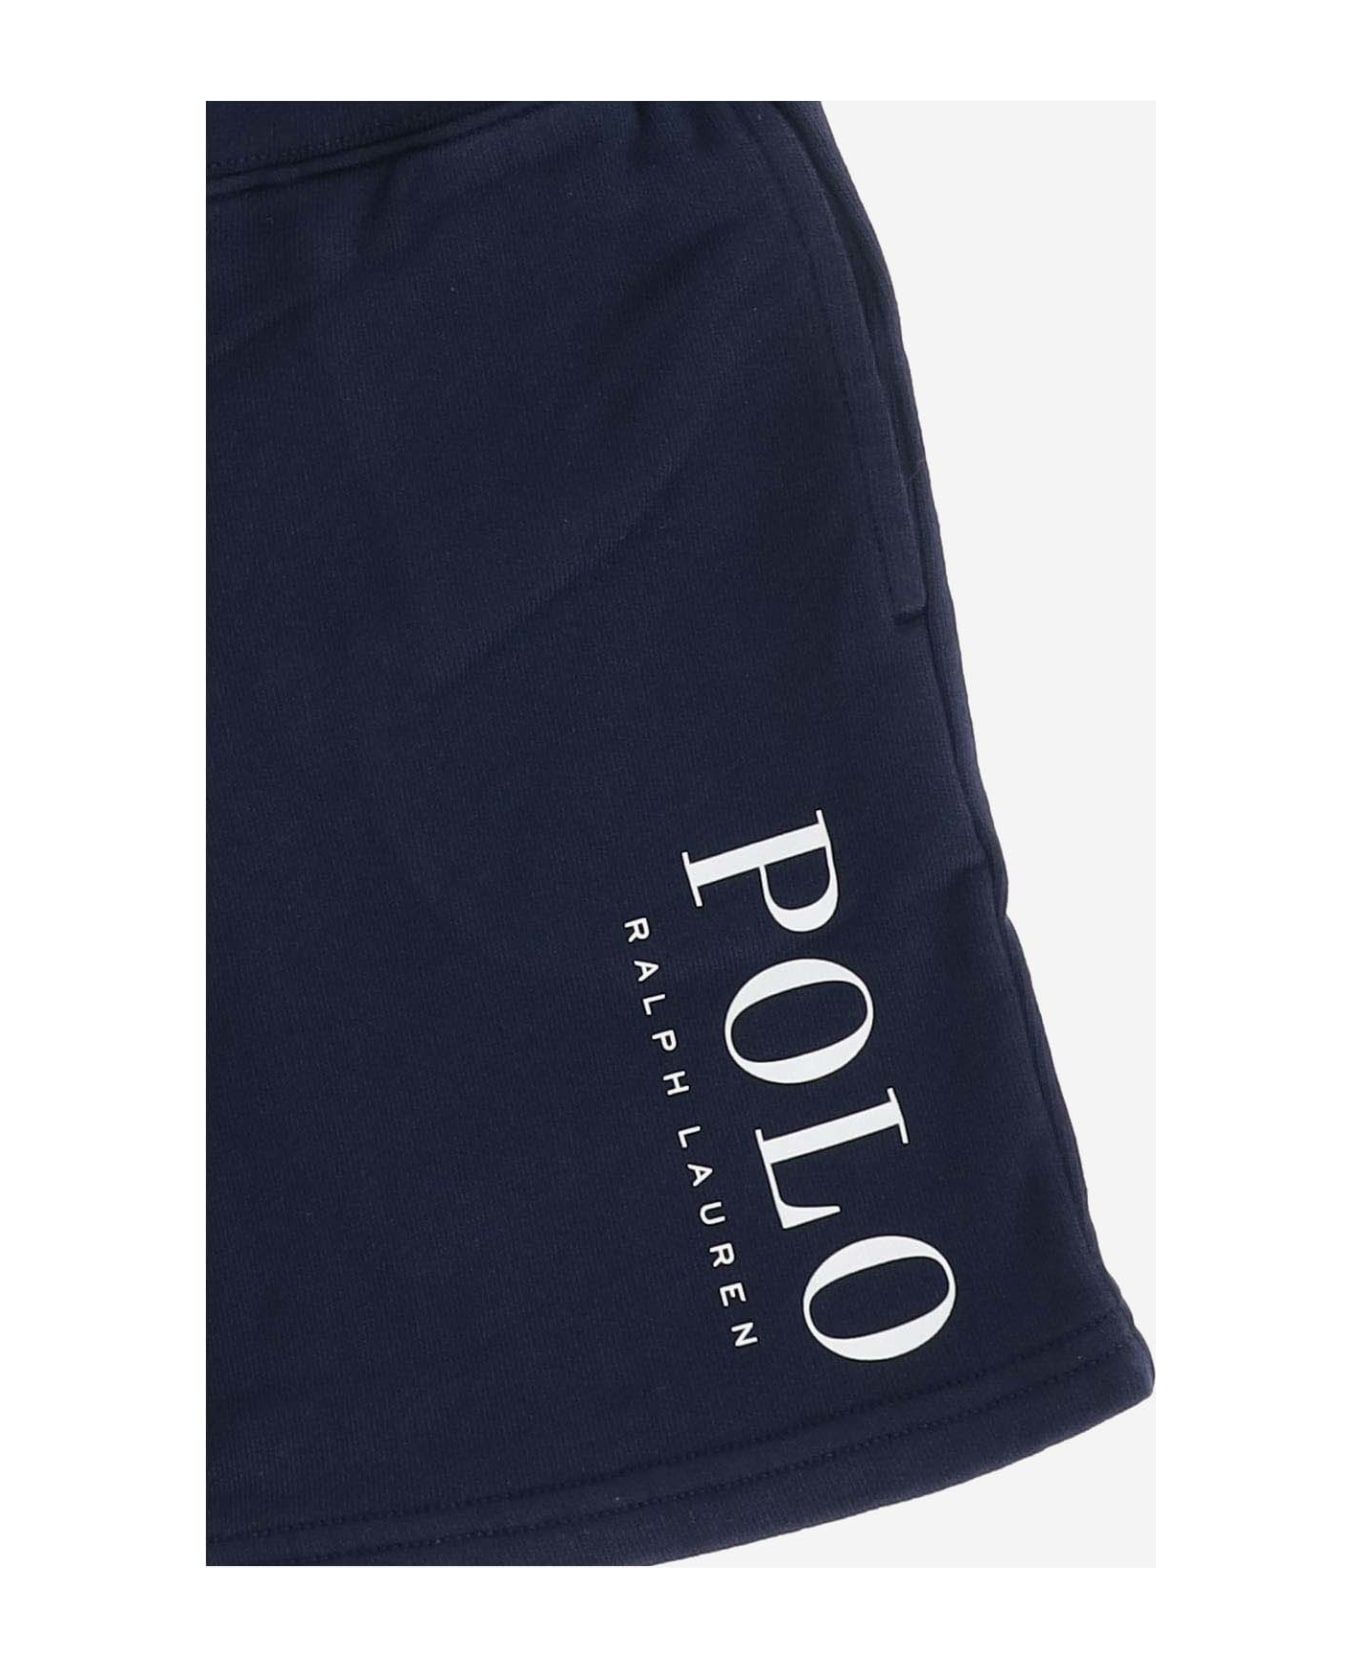 Polo Ralph Lauren Cotton Blend Logo Short Pants - Blue